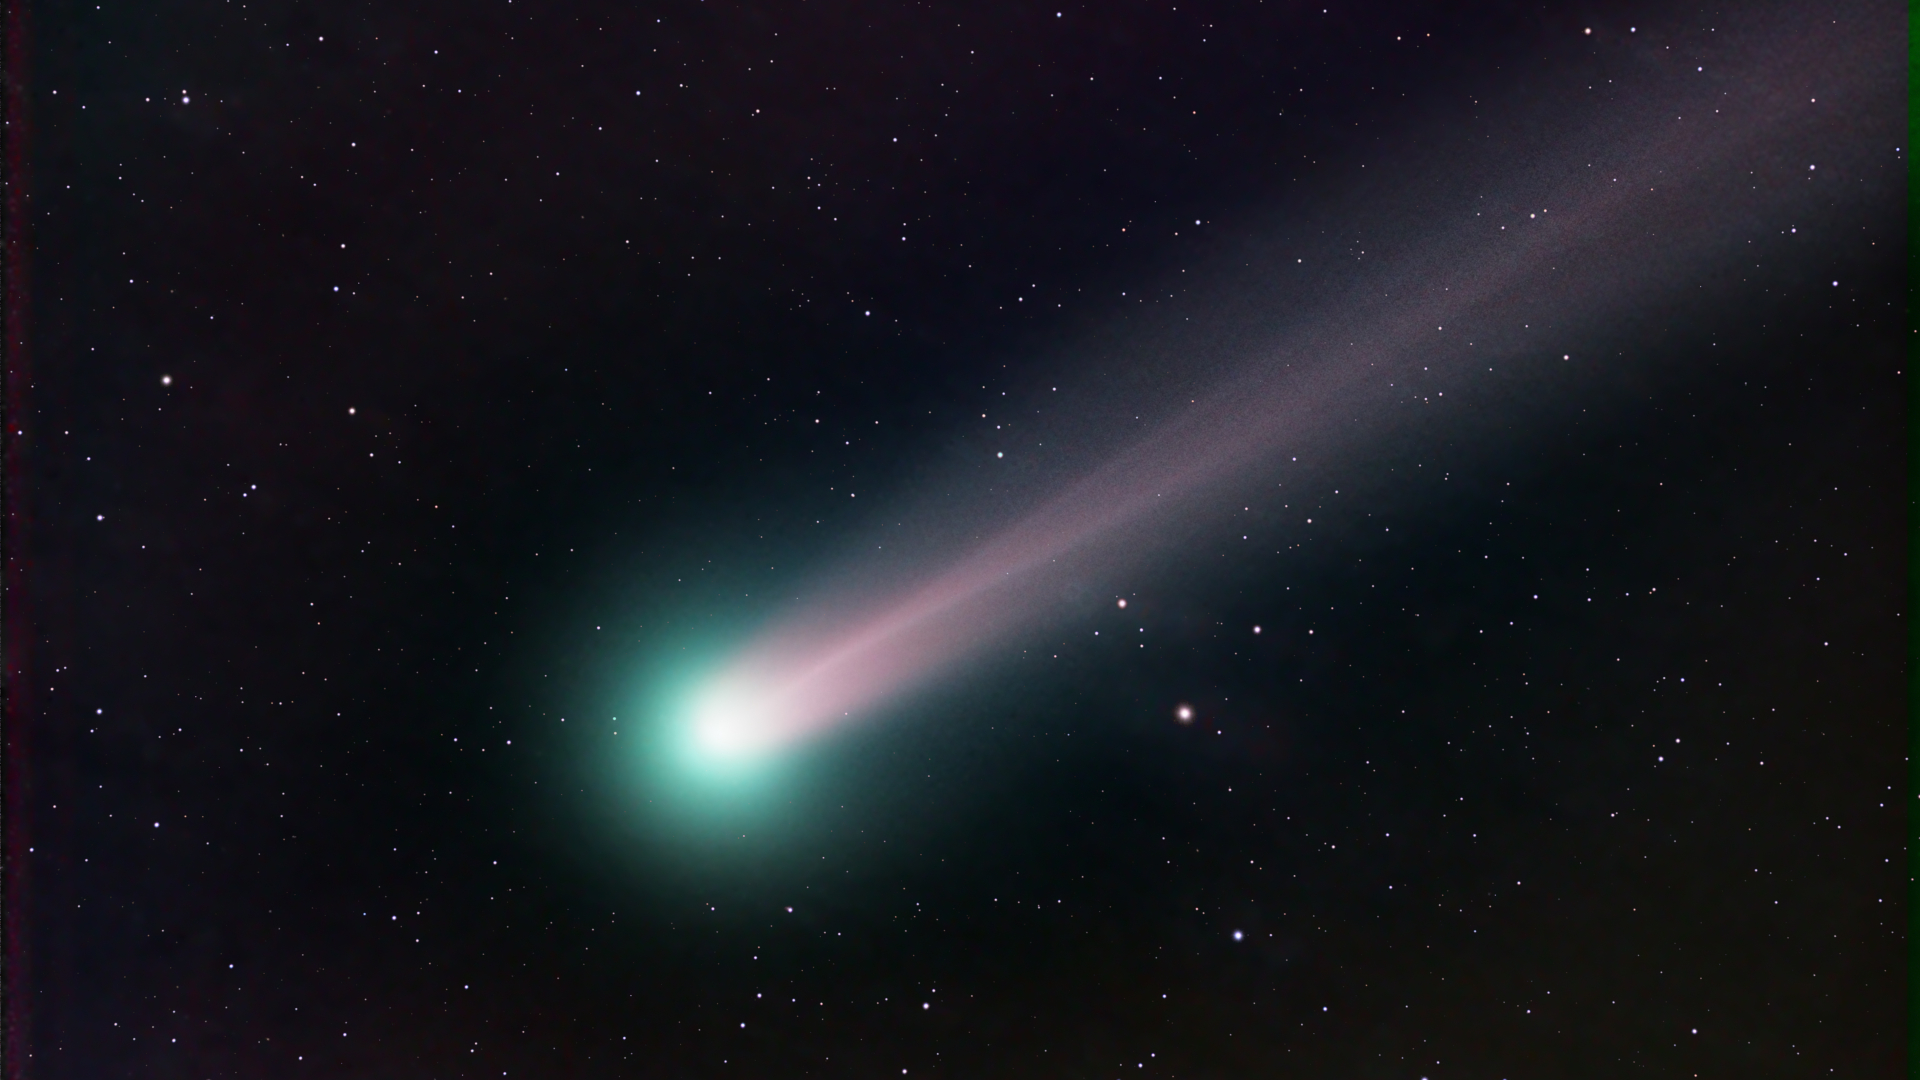 oort cloud comet pathway